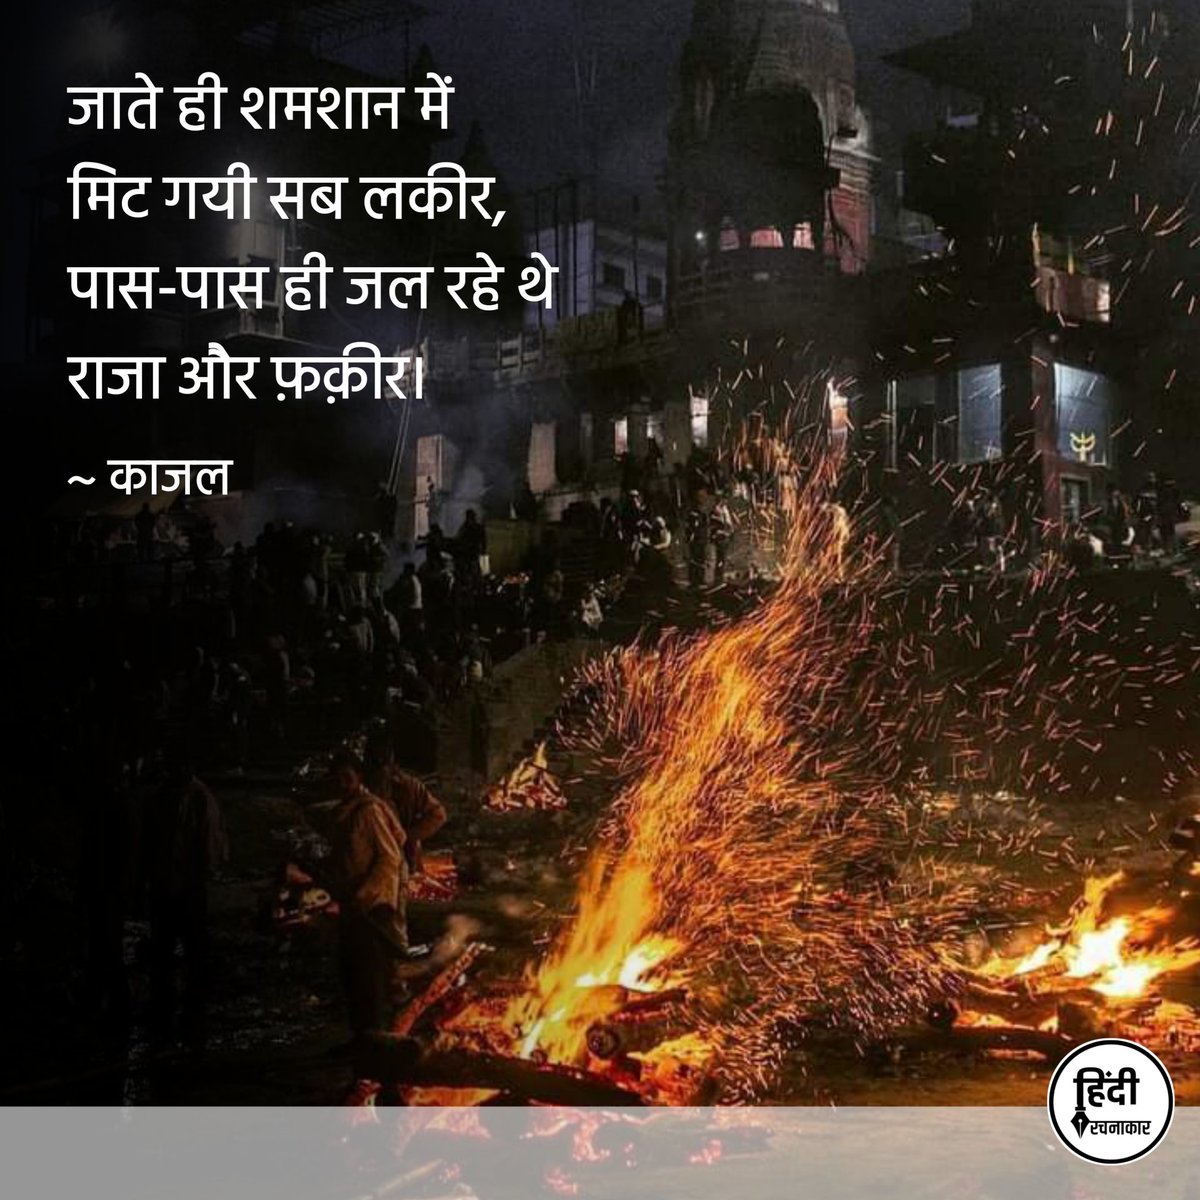 जाते ही शमशान में
मिट गयी सब लकीर,
पास-पास ही जल रहे थे
राजा और फ़क़ीर

~ काजल

#Hindirachnakaar